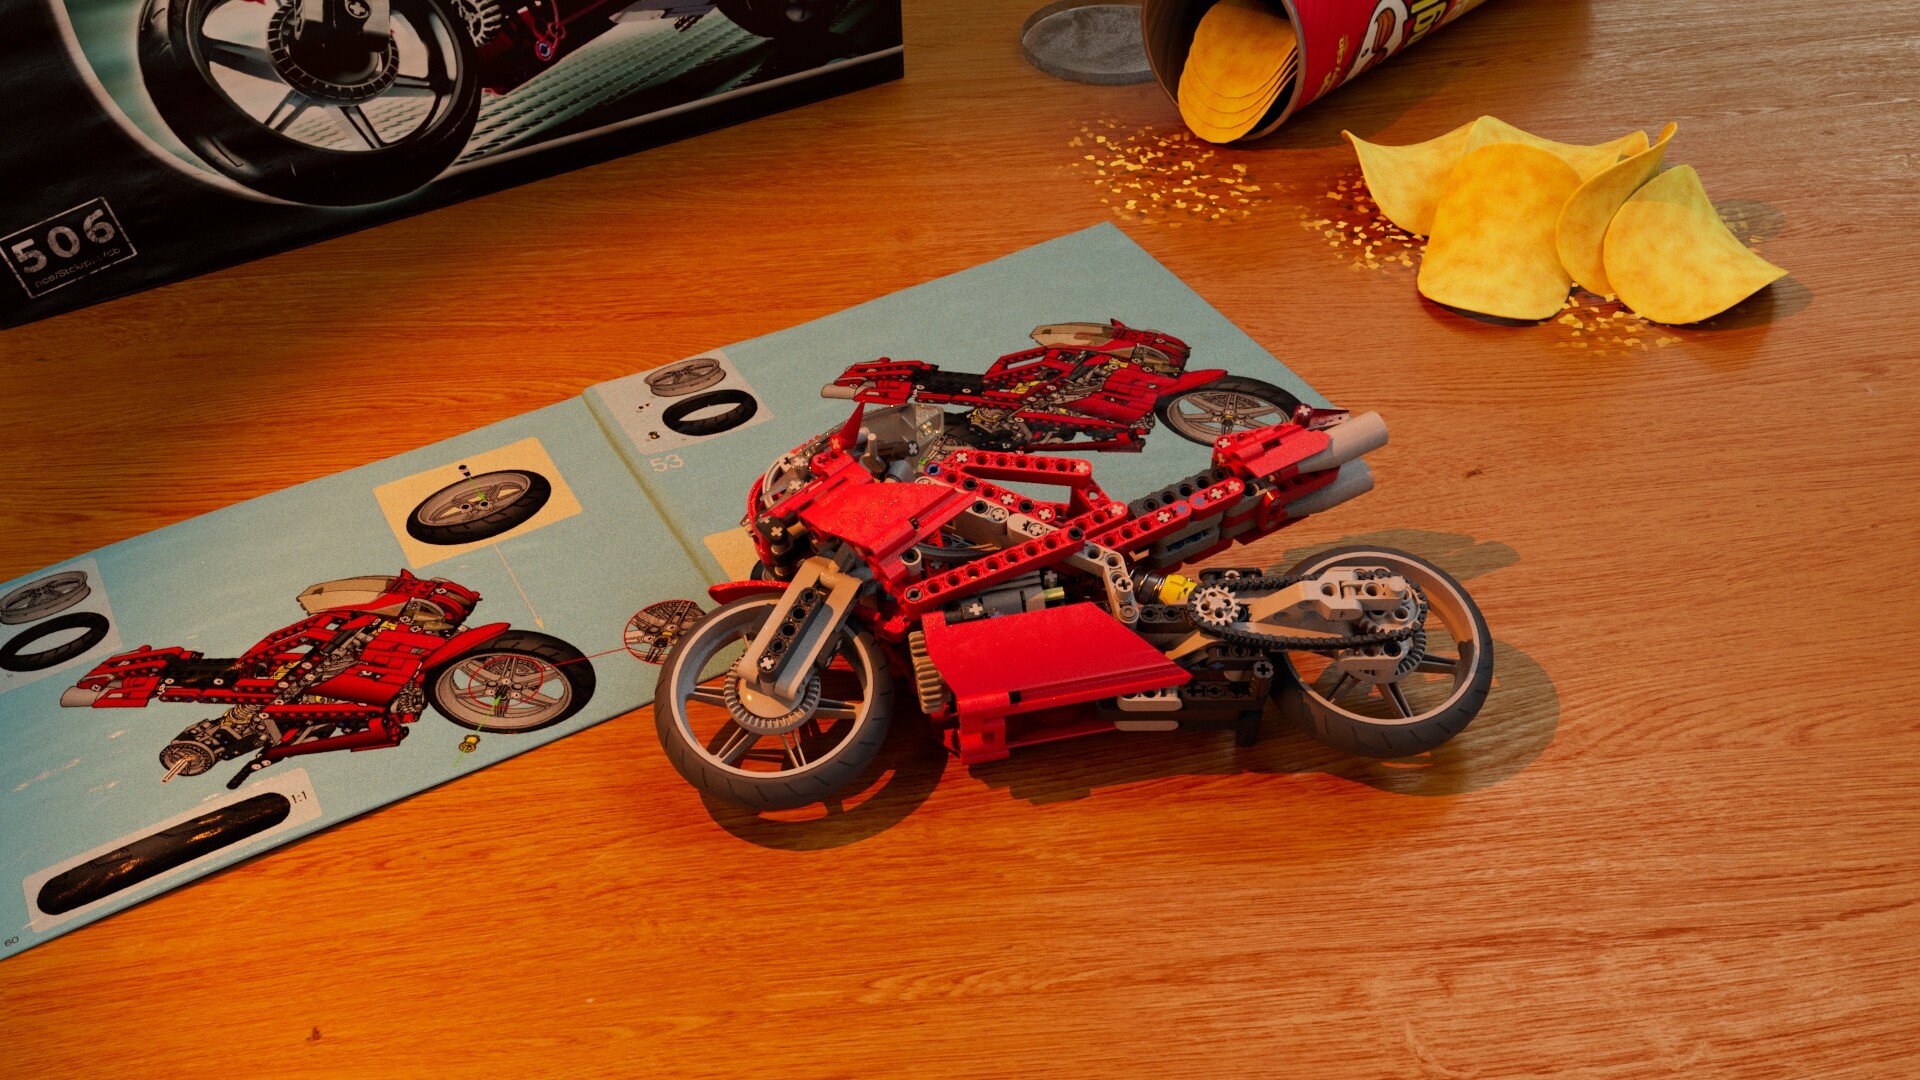 LEGO TECHNIC 8420 Street Bike Motorcycle Motorbike - Complete w